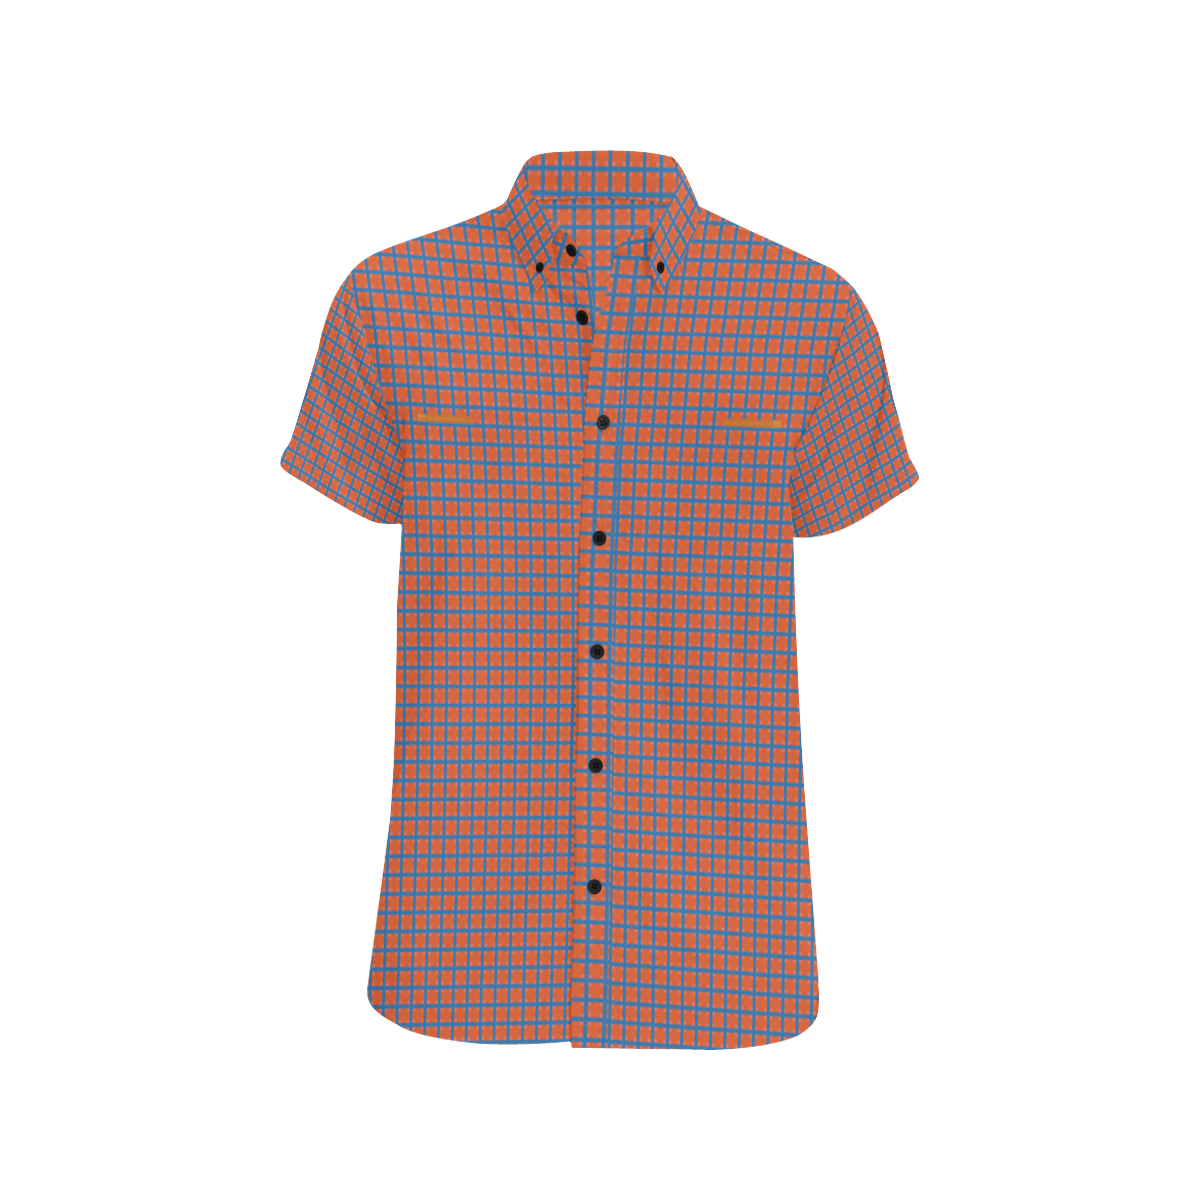 EmploymentalGrid 36 Men's All Over Print Short Sleeve Shirt (Model T53)